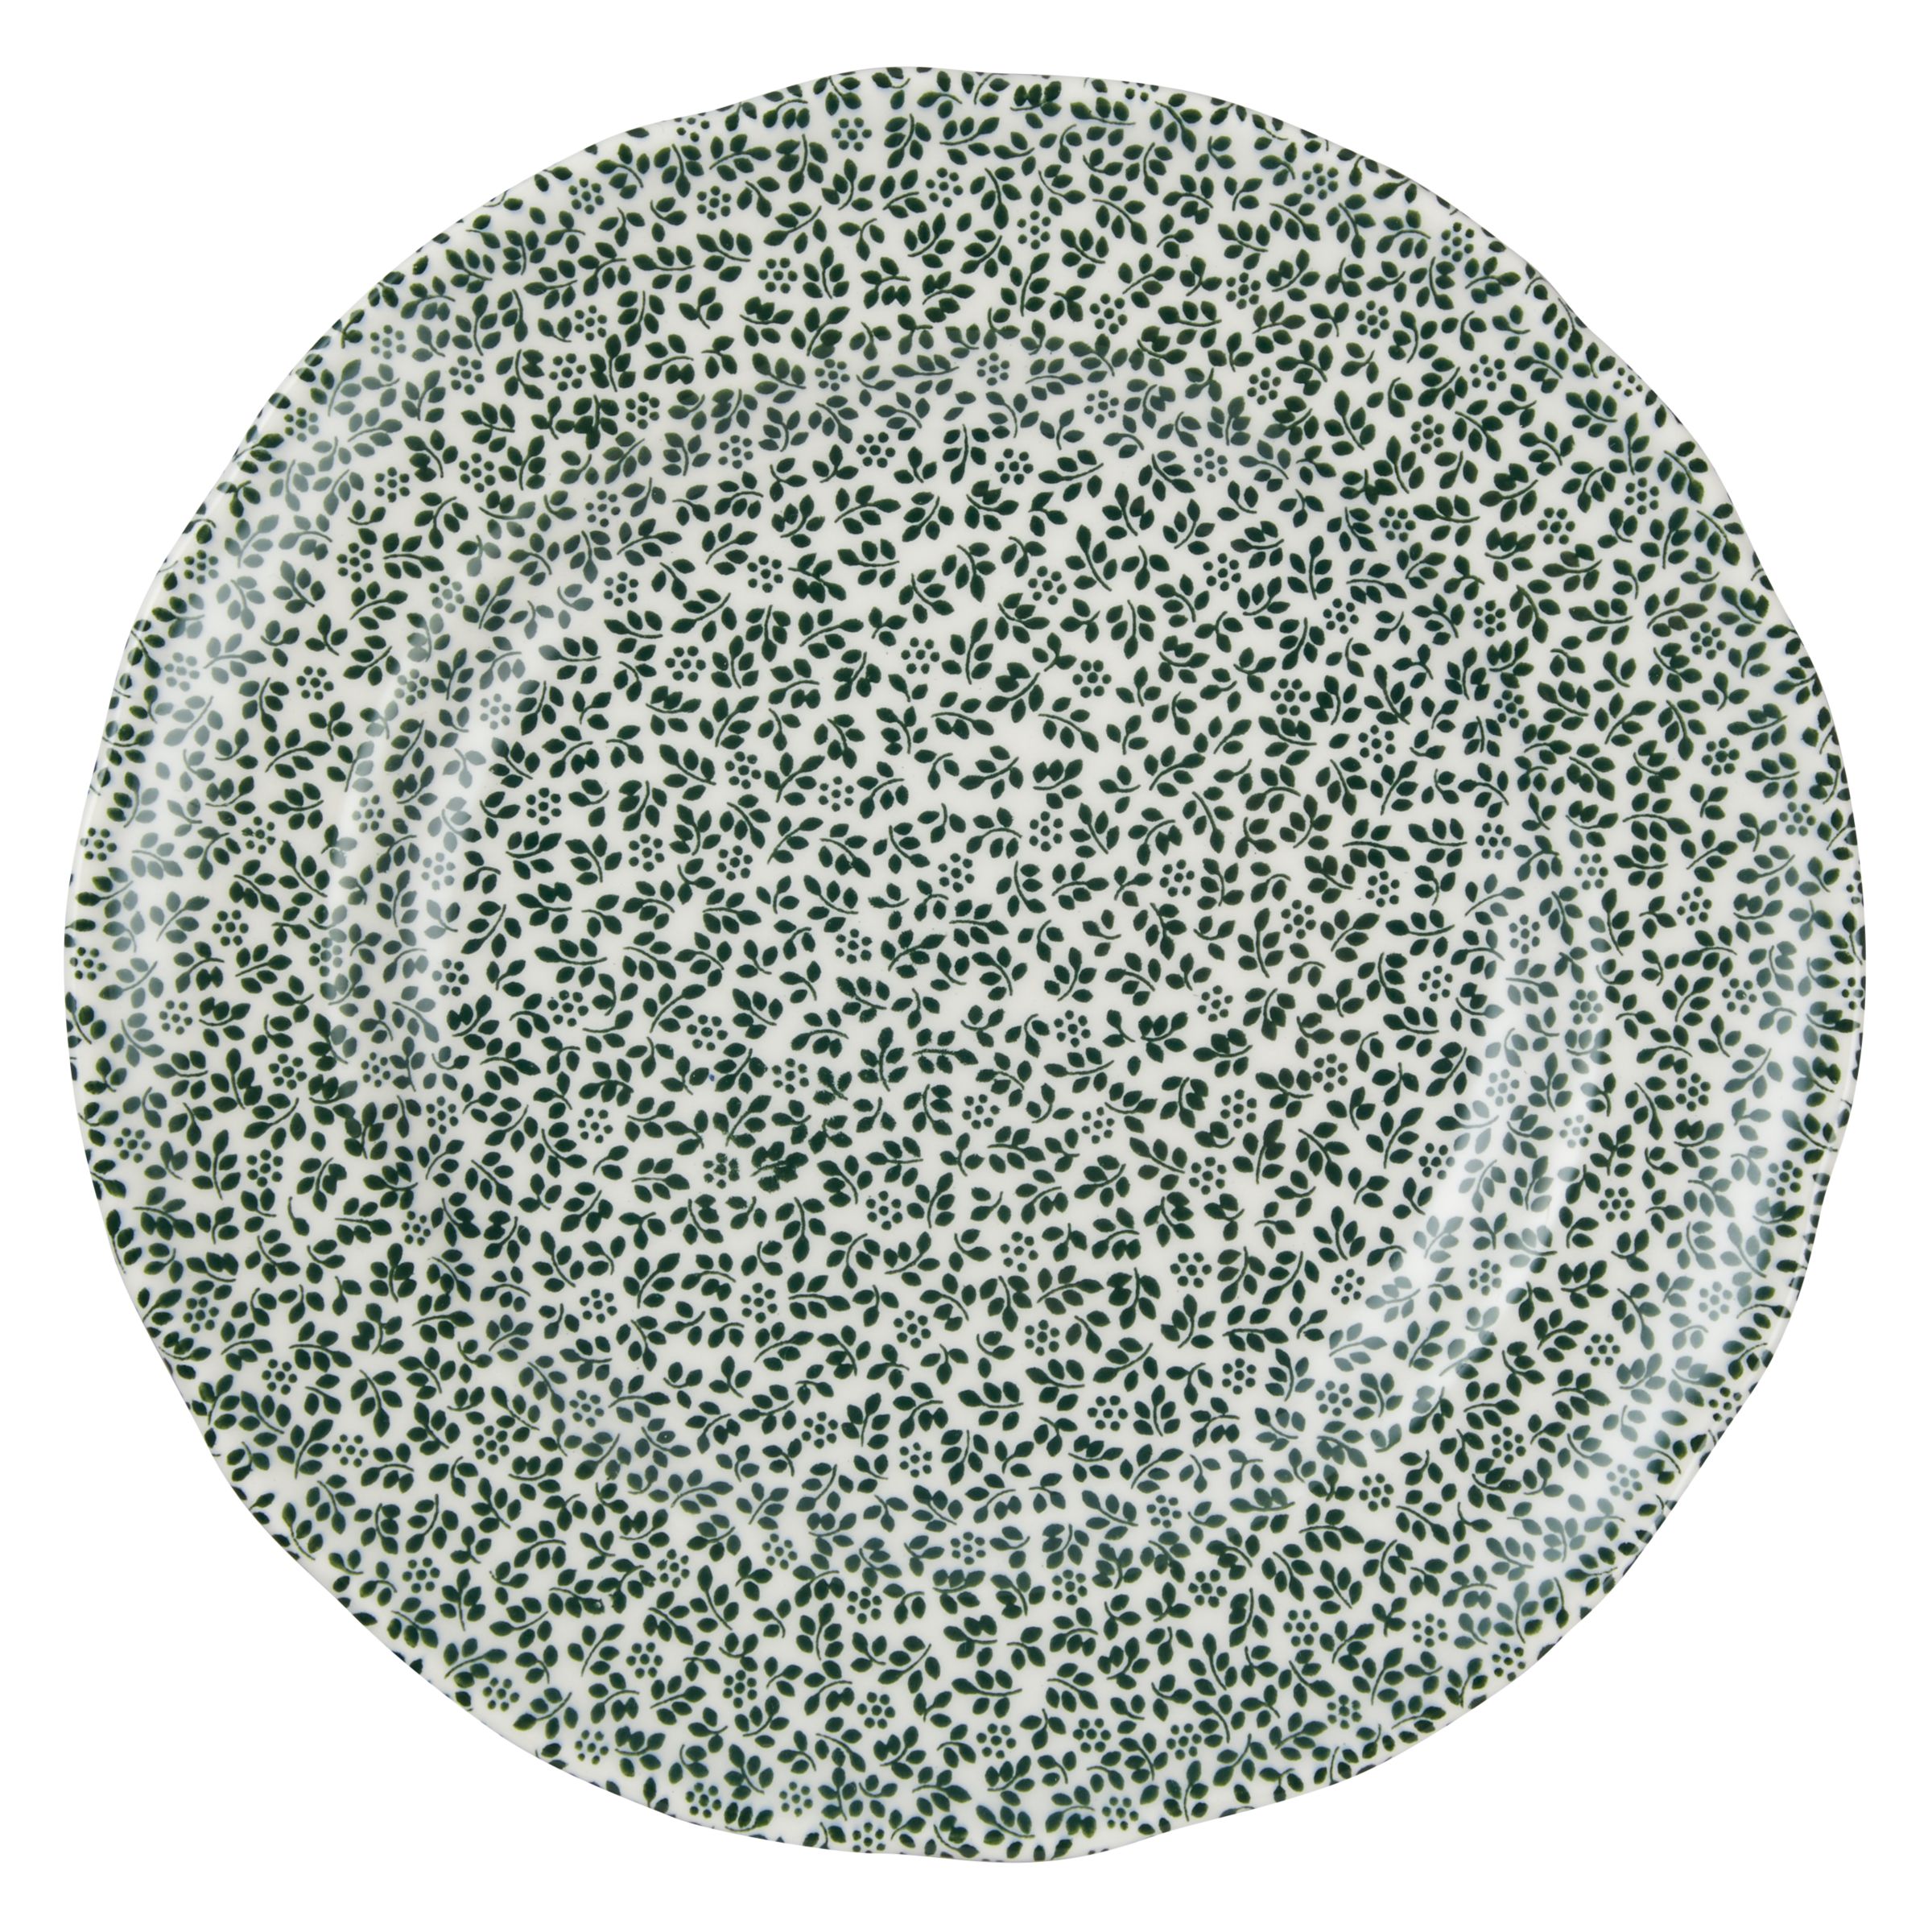 Spode Ruskin House Thyme 15cm Plate, White / Green